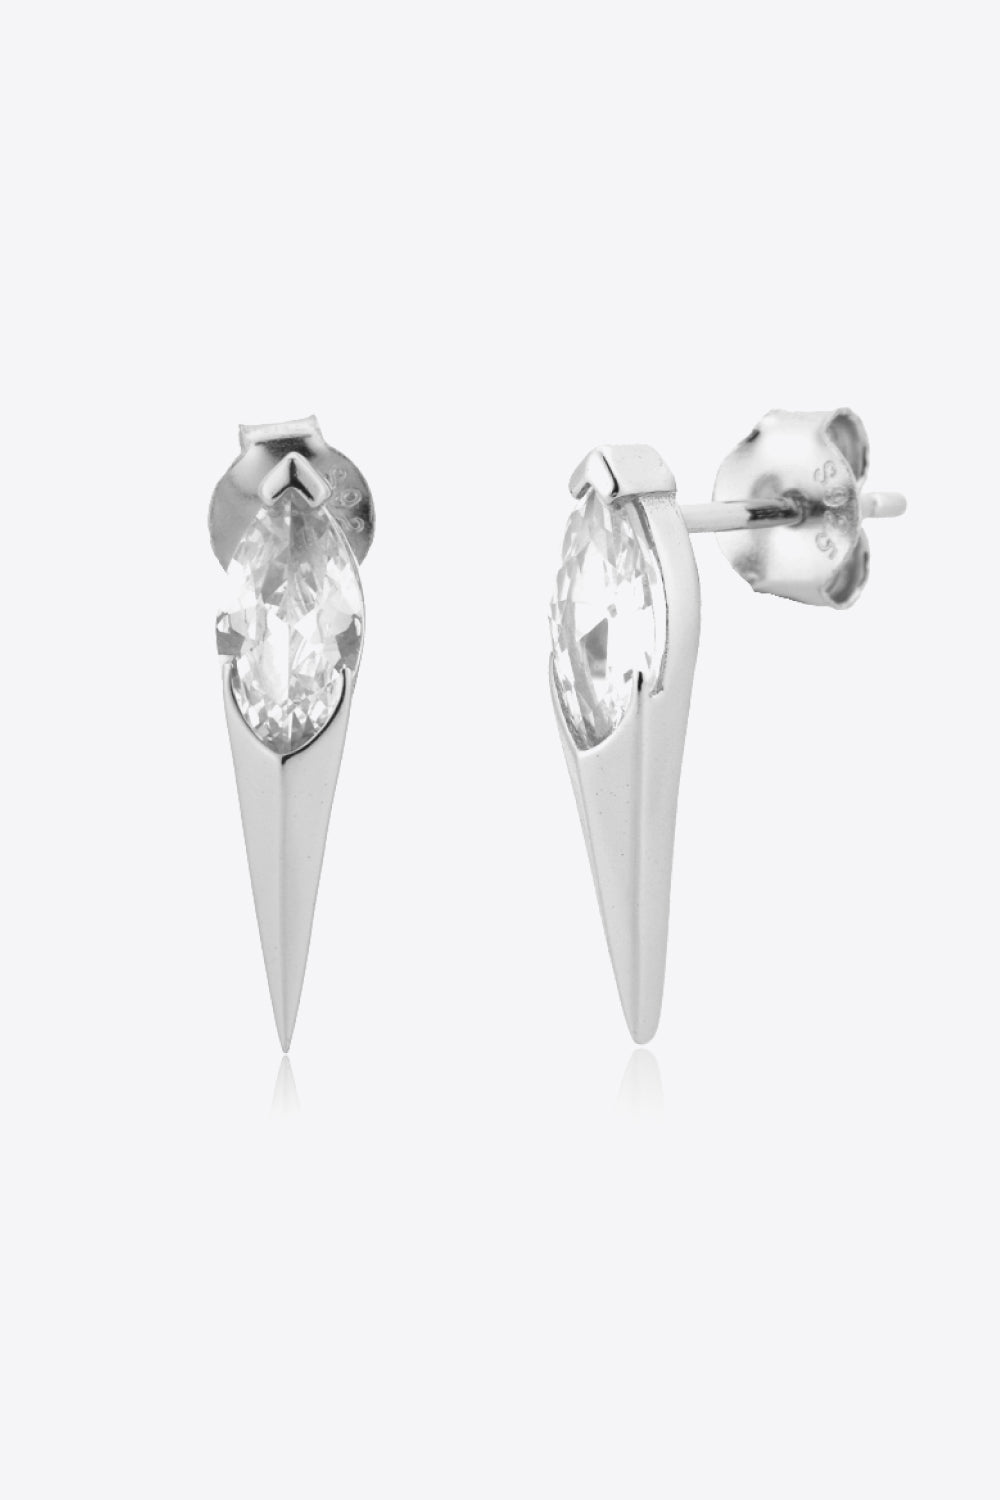 Zircon Decor 925 Sterling Silver Earrings - Earrings - FITGGINS